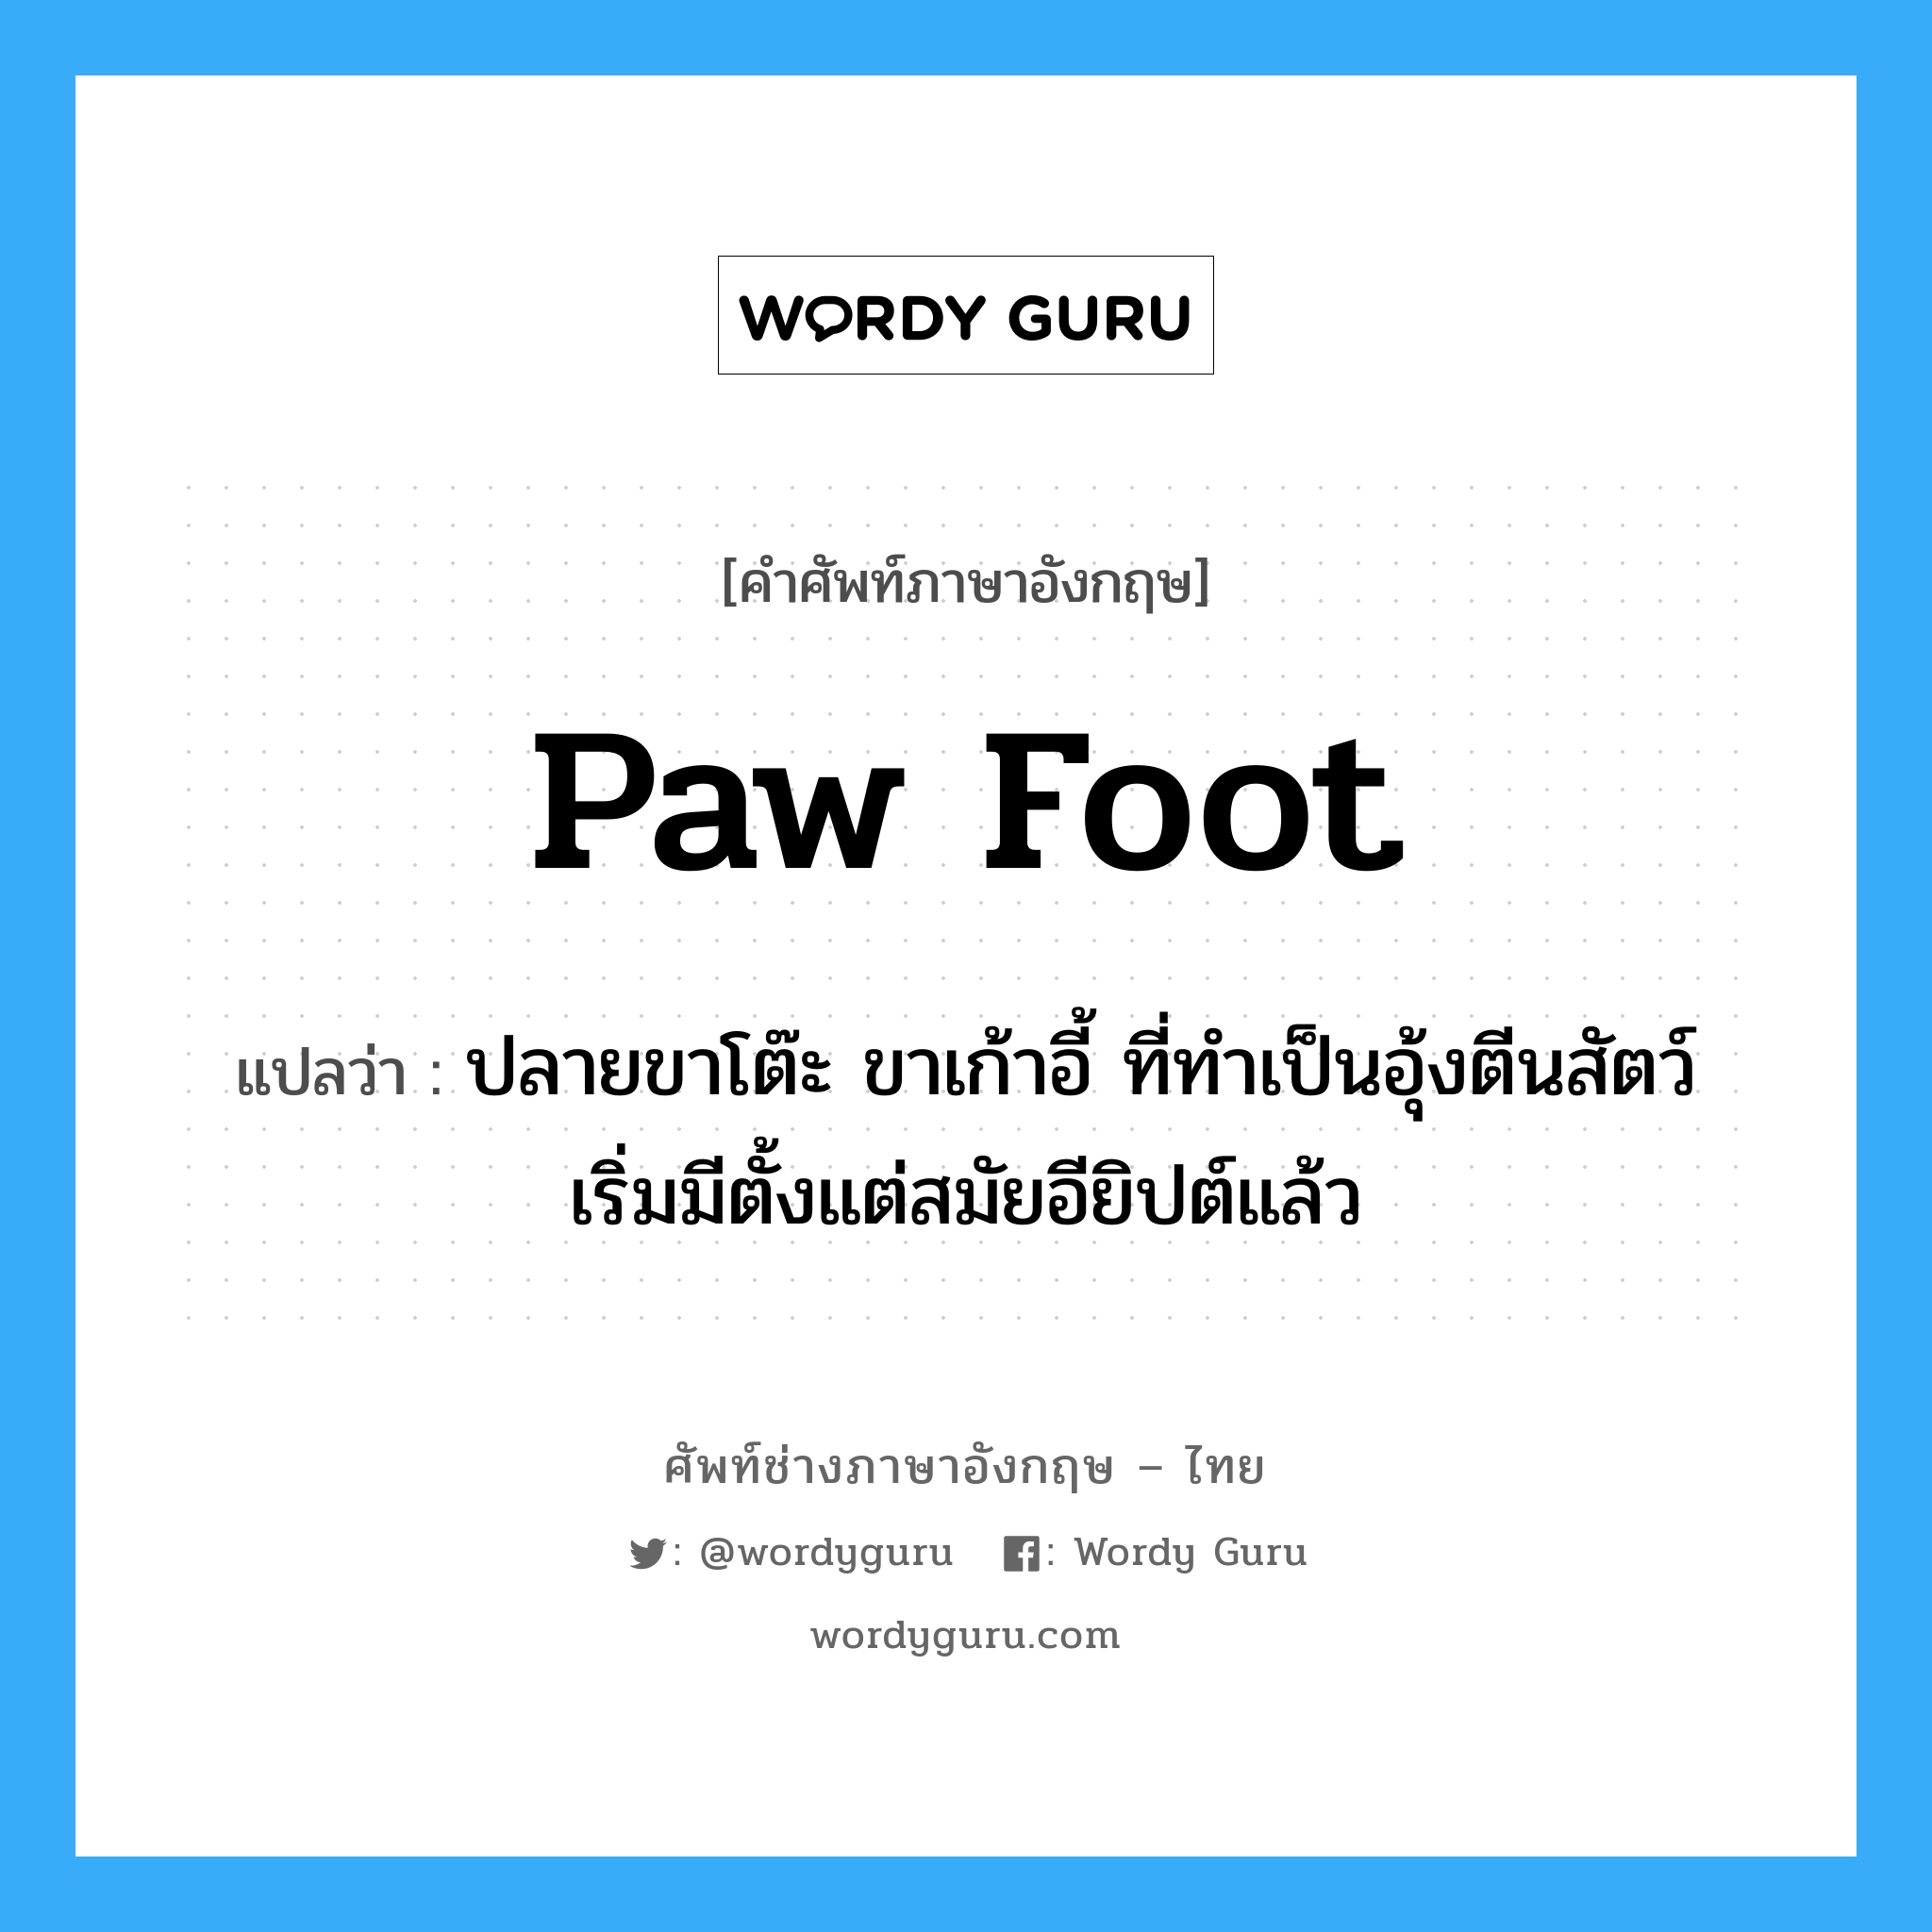 paw foot แปลว่า?, คำศัพท์ช่างภาษาอังกฤษ - ไทย paw foot คำศัพท์ภาษาอังกฤษ paw foot แปลว่า ปลายขาโต๊ะ ขาเก้าอี้ ที่ทำเป็นอุ้งตีนสัตว์ เริ่มมีตั้งแต่สมัยอียิปต์แล้ว